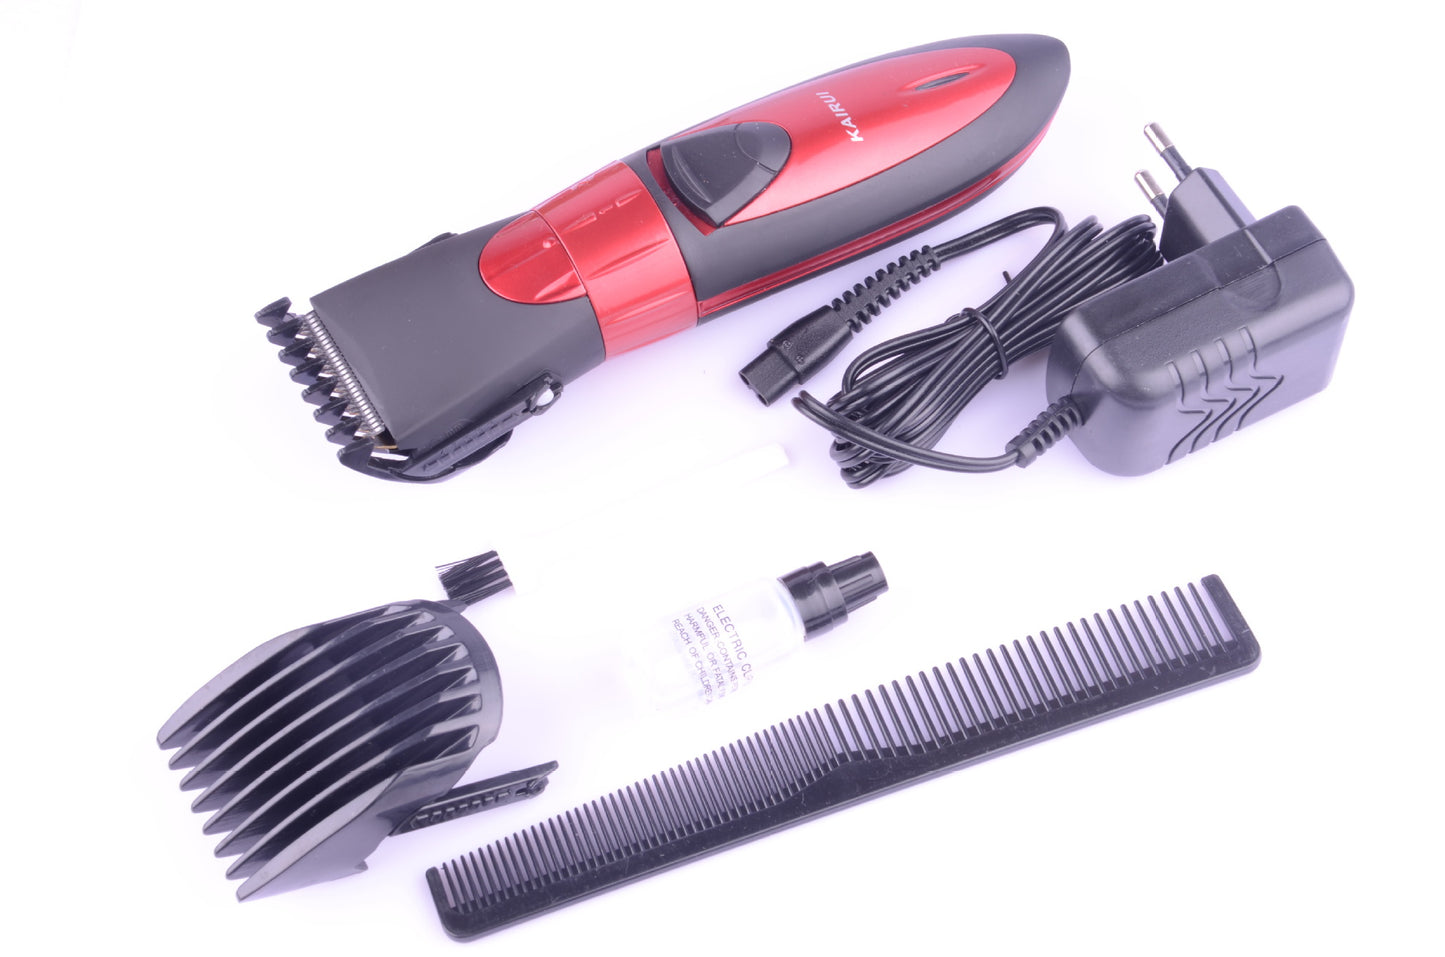 Electric hair clipper for hair salon